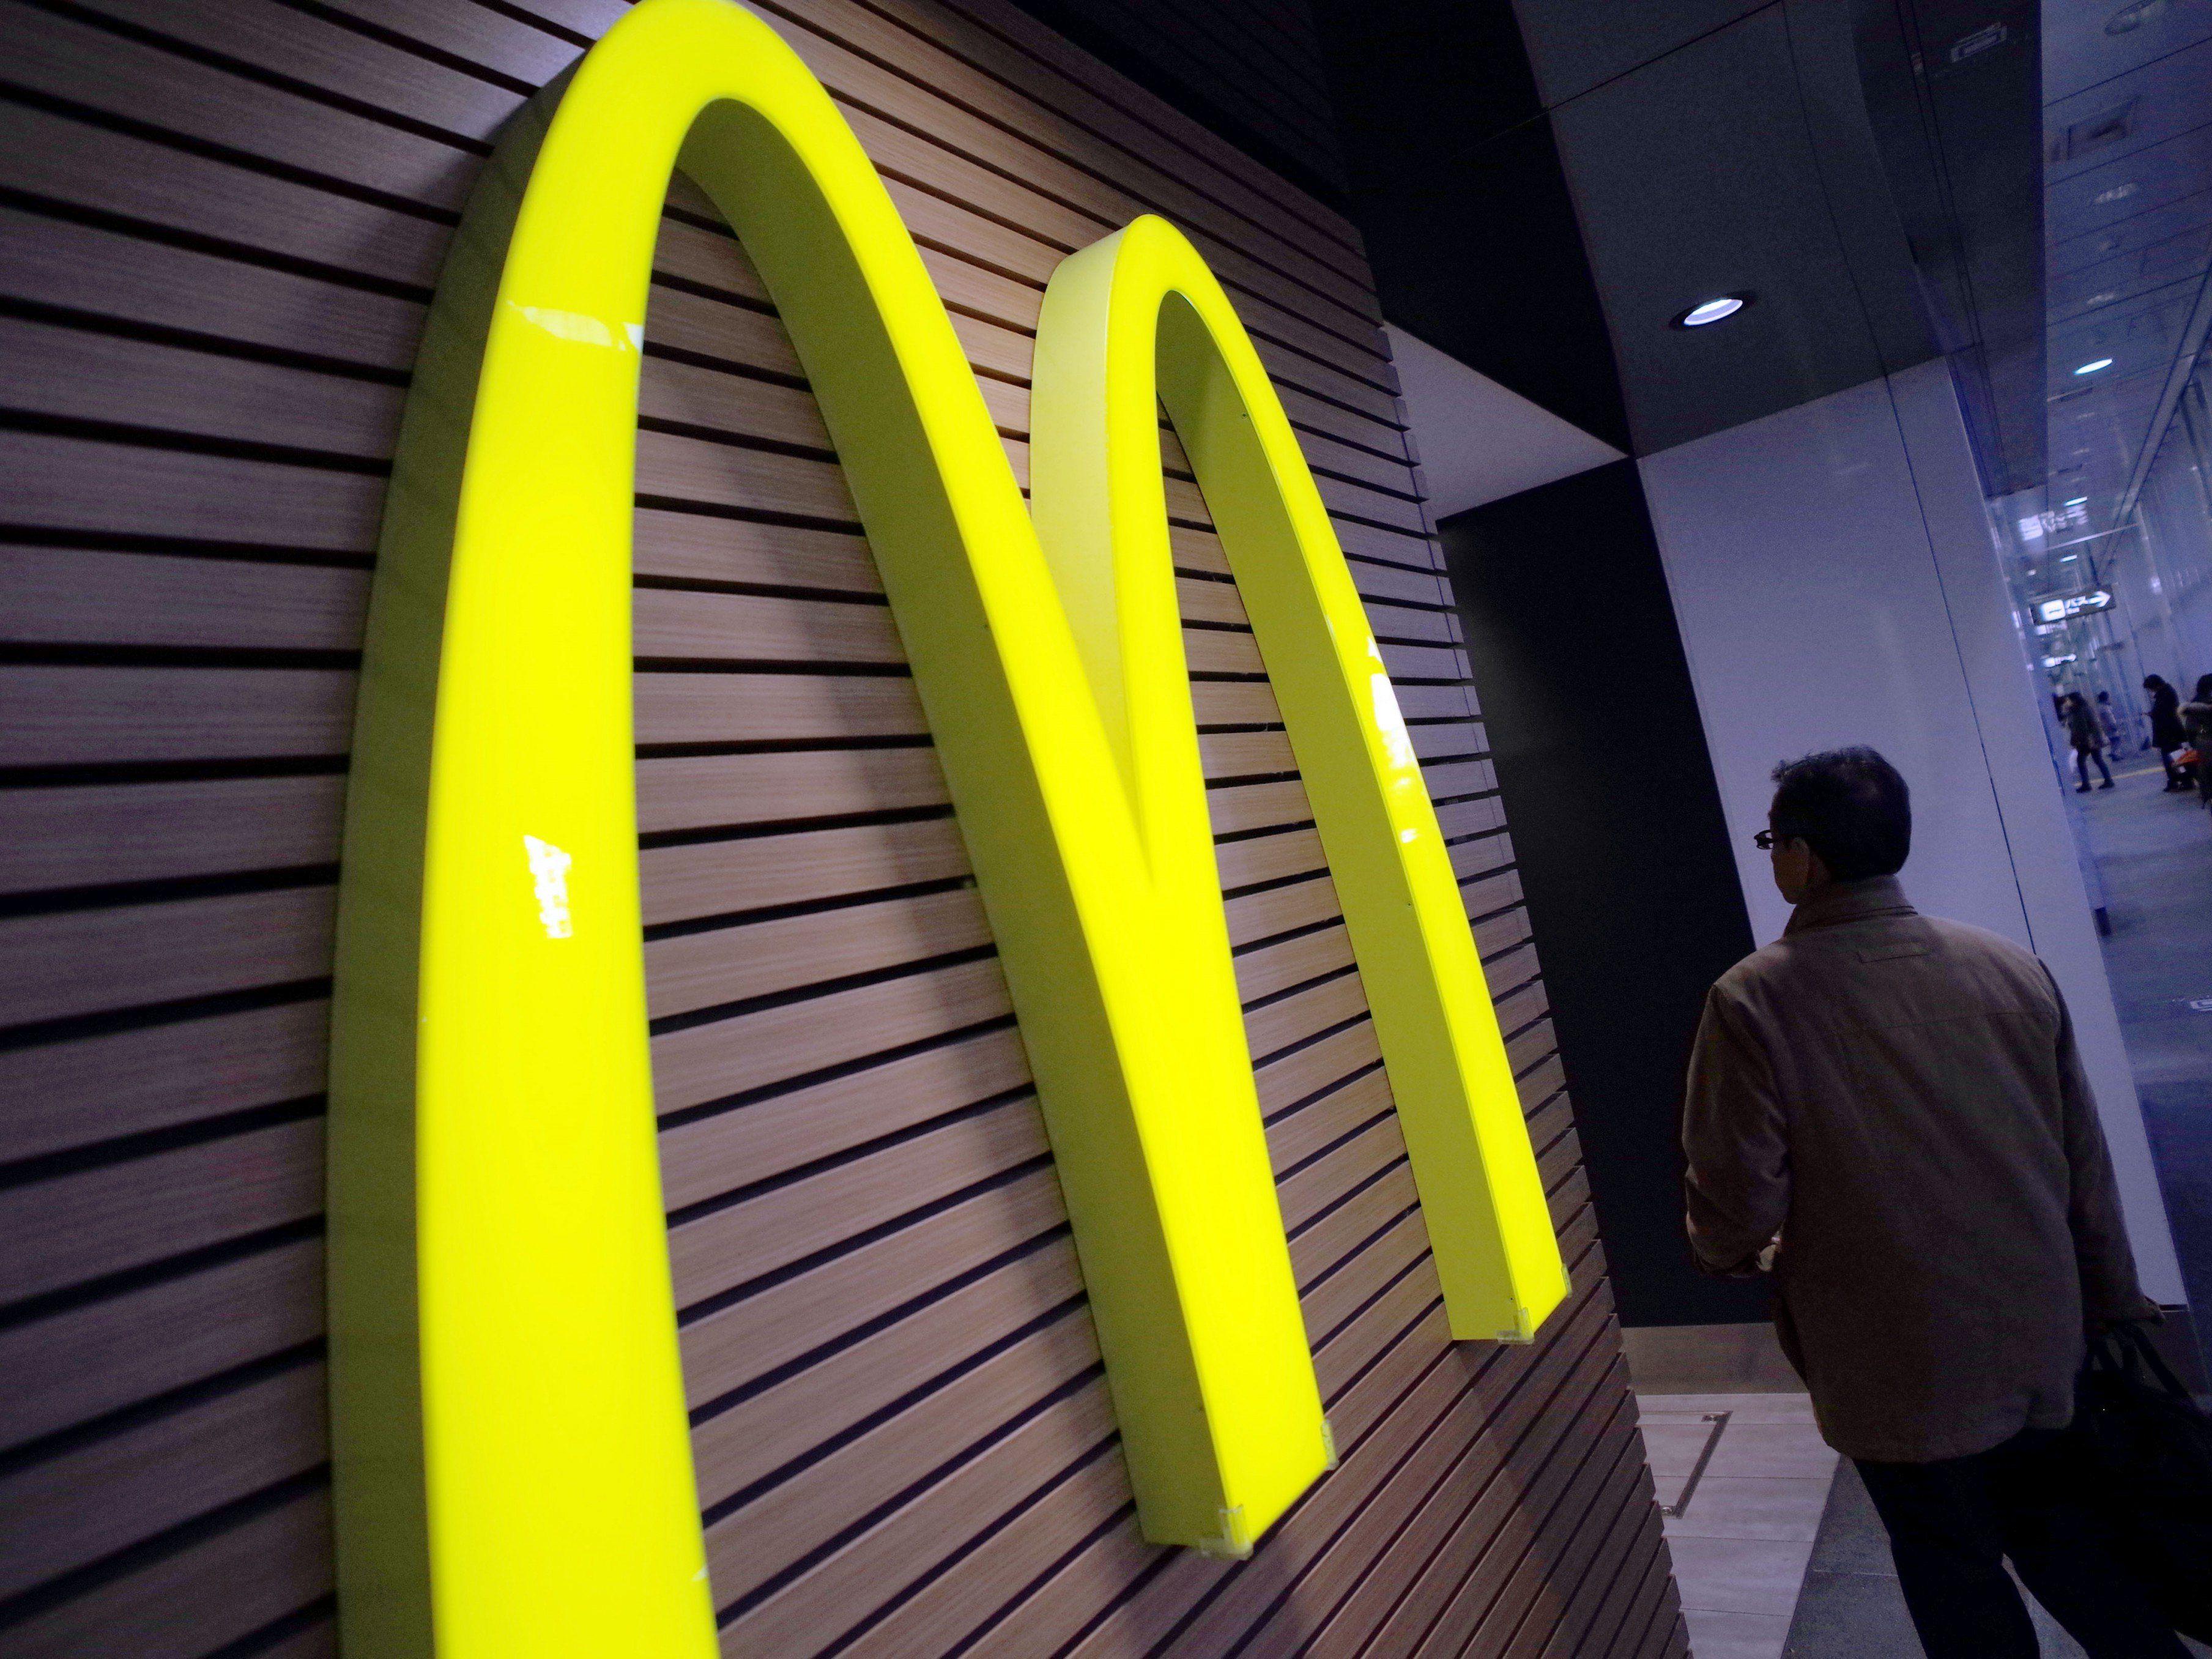 Fastfood-Kette McDonald's plant beim Millennium-Park-Kreisverkehr einen Standort